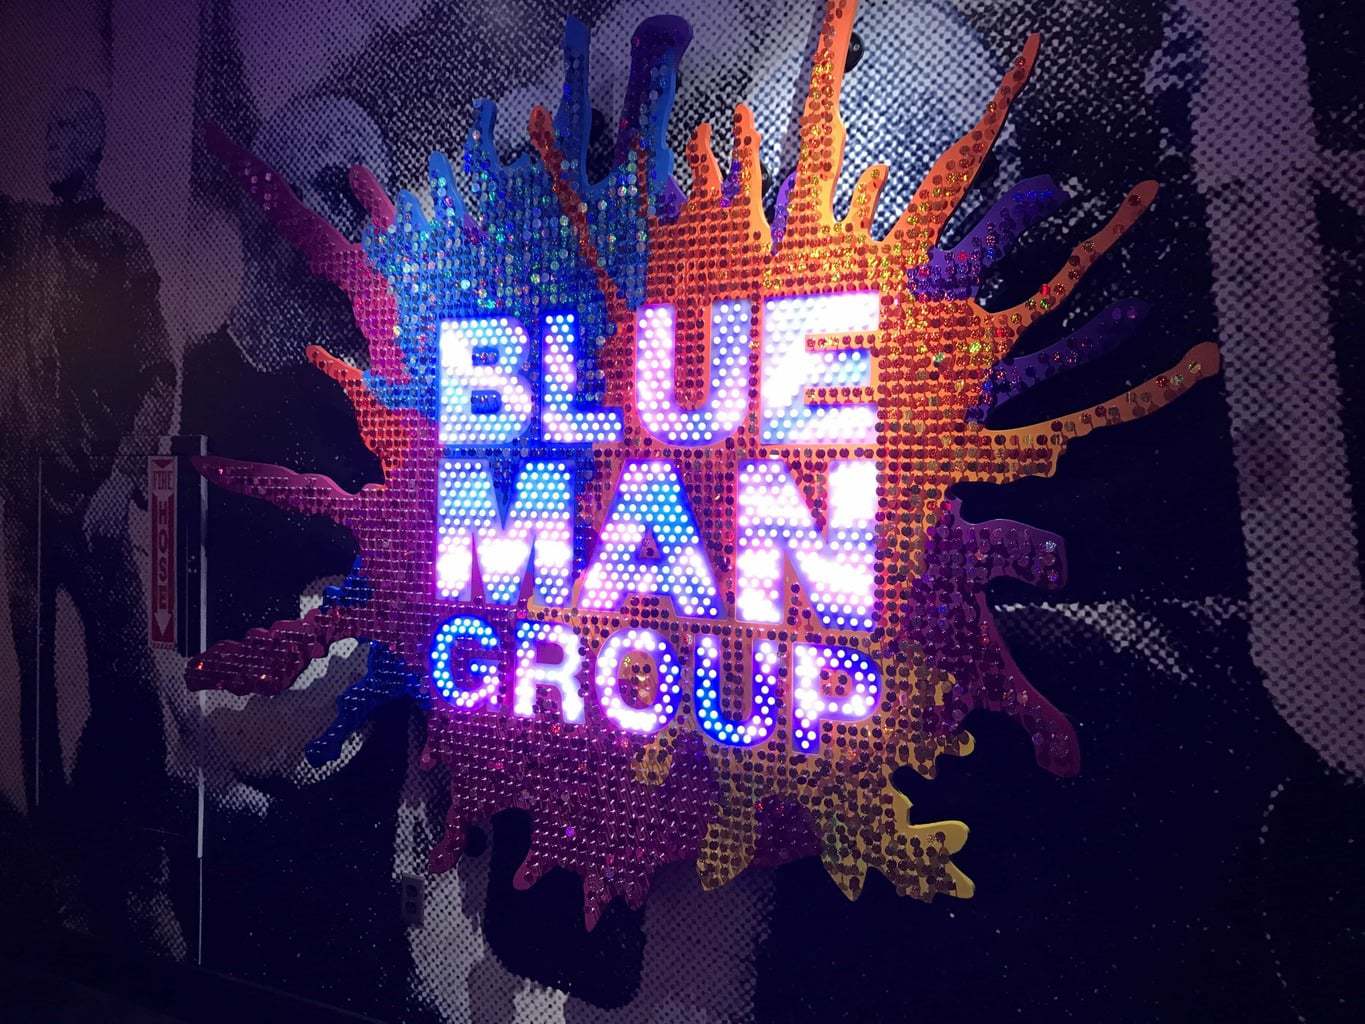 Blue man Group in Vegas